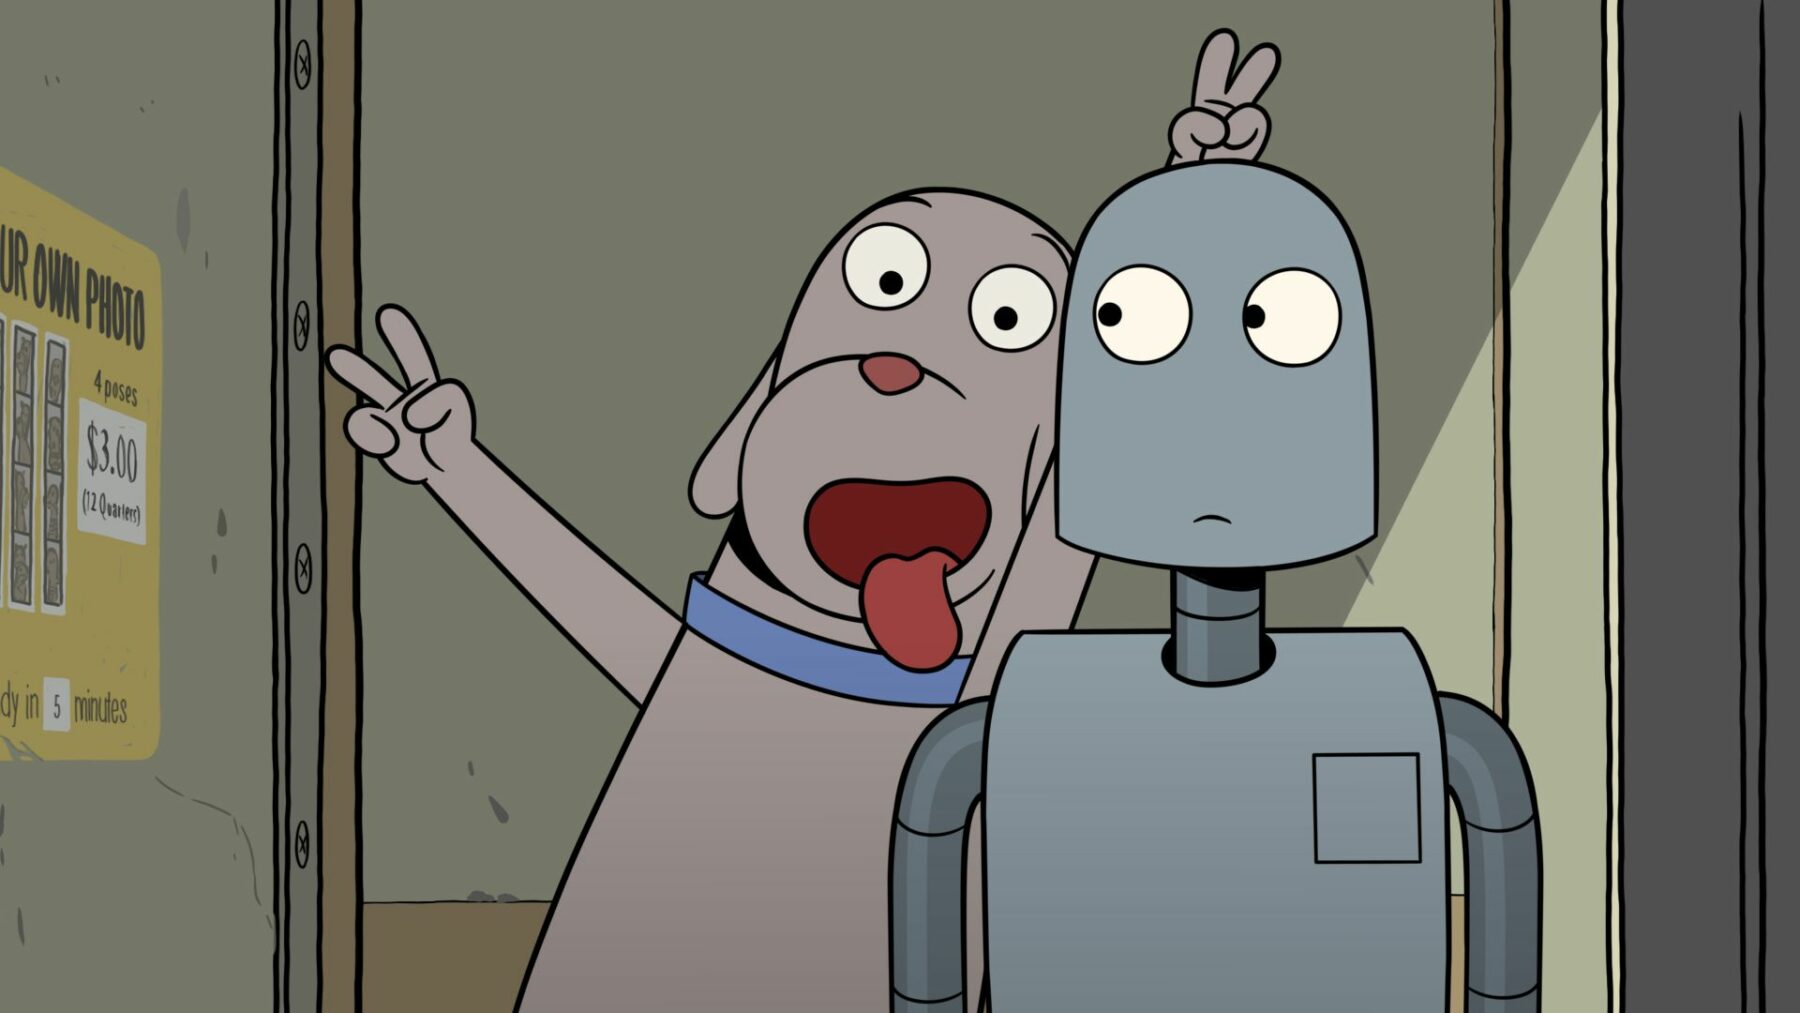 Kadr z animacji z psemi i jego przyjacielem robotem.